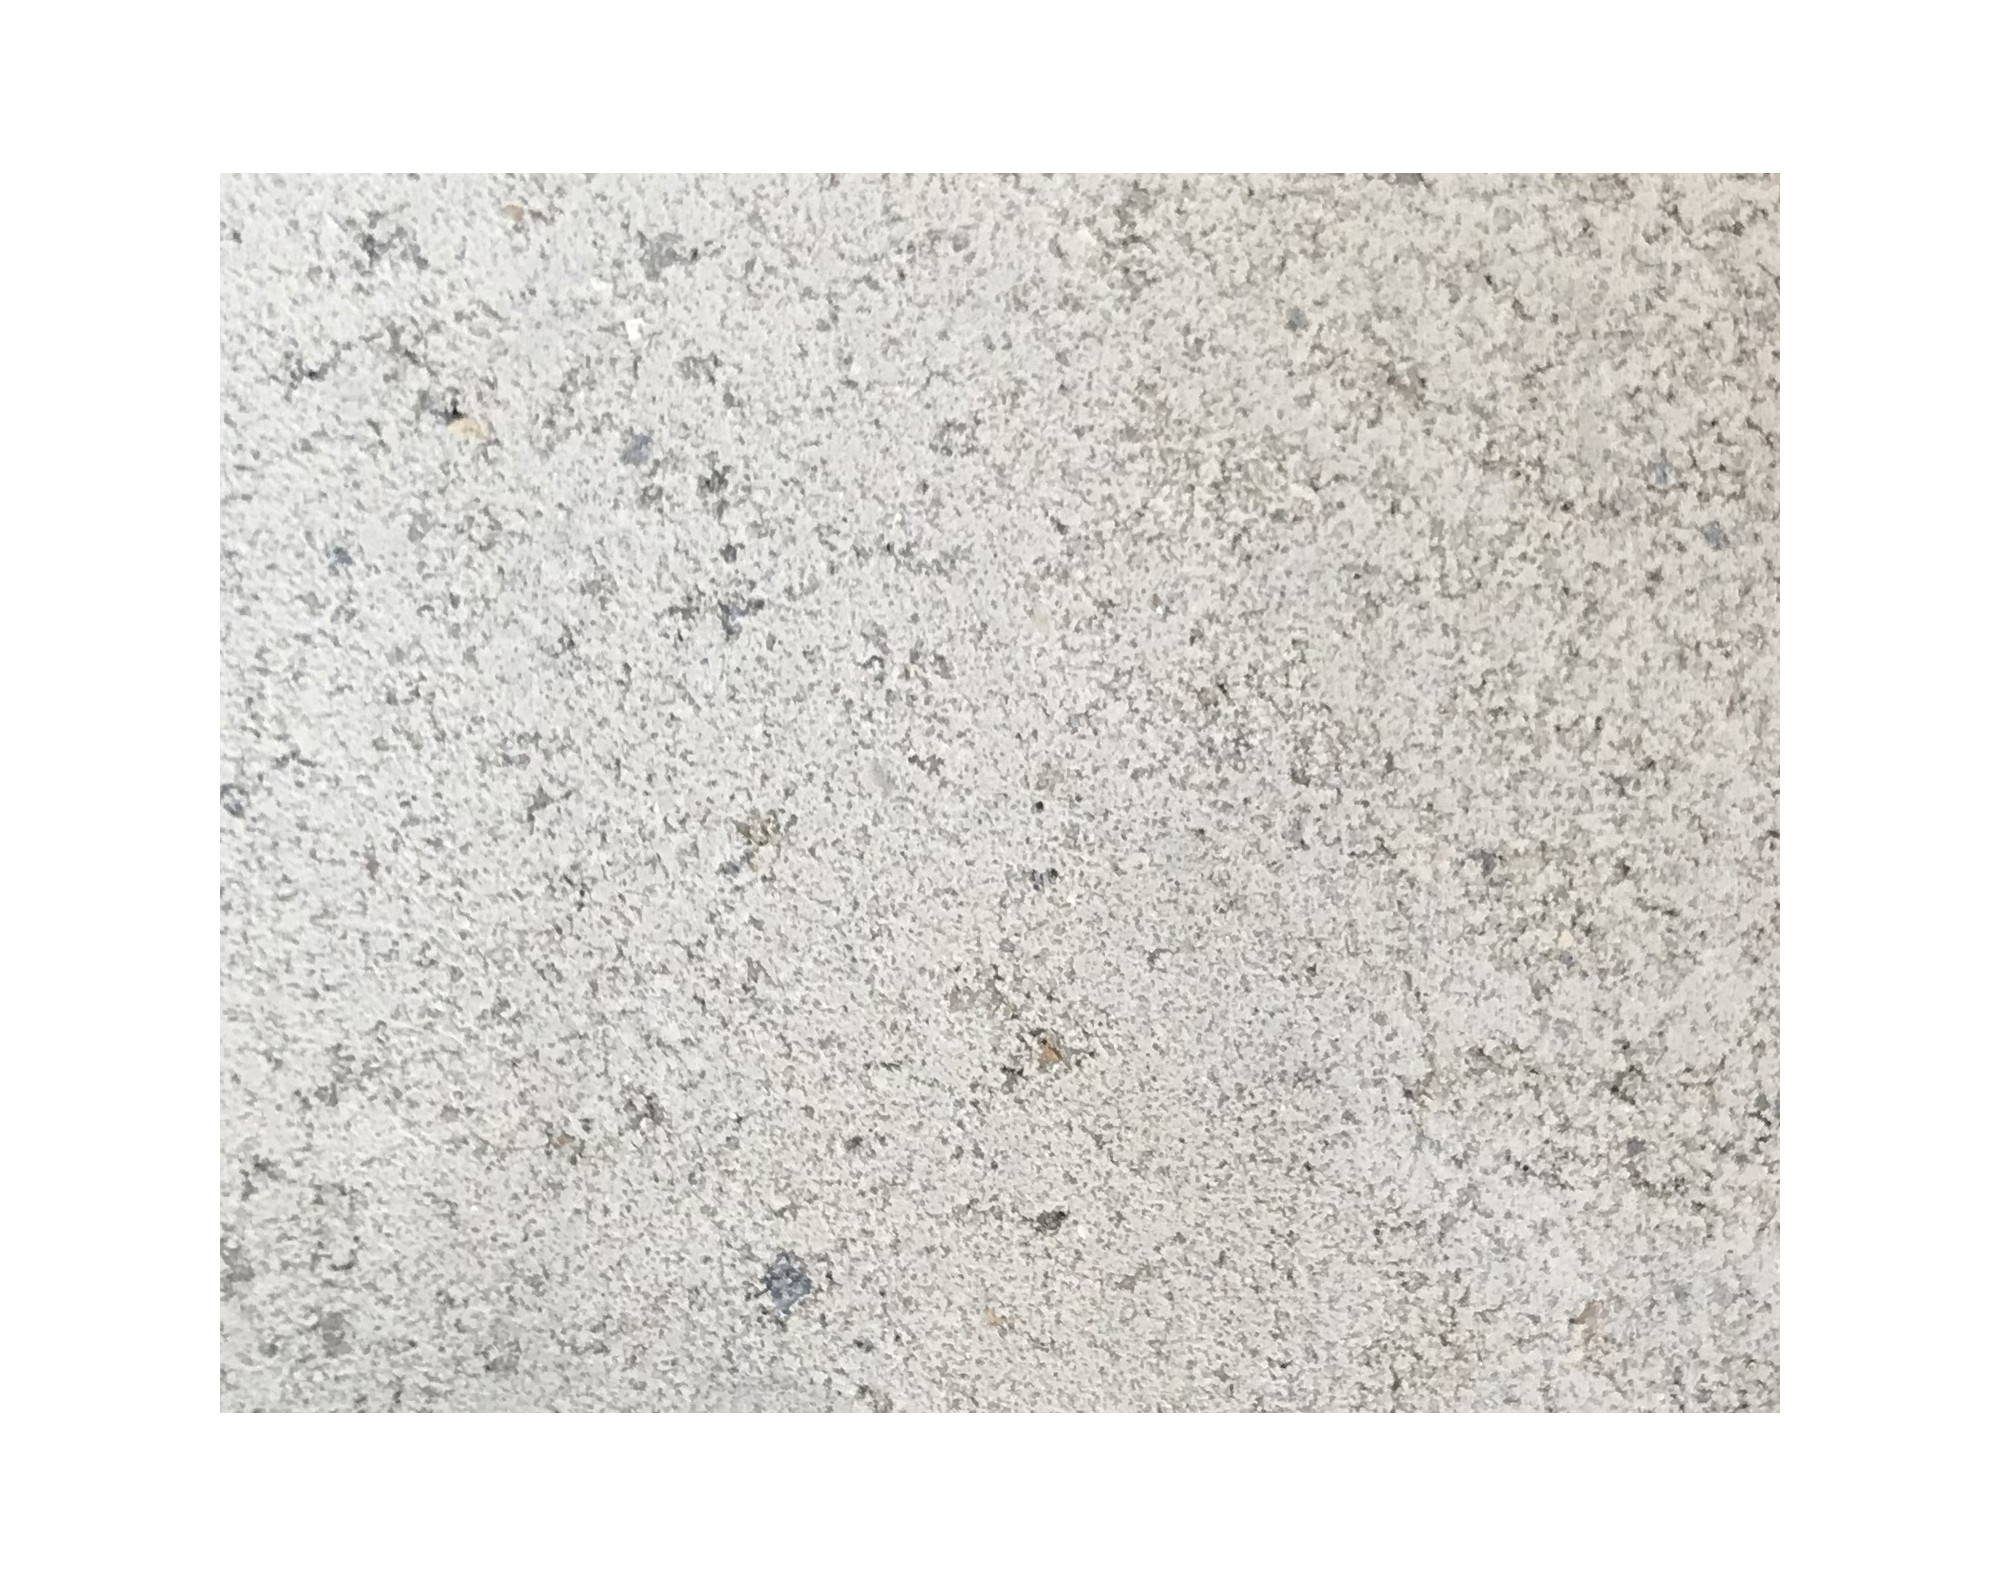 Harmo roc nevadaset, rustica-serie, 8-vormig d:5,50mx8,55m, gebroken wit, beton